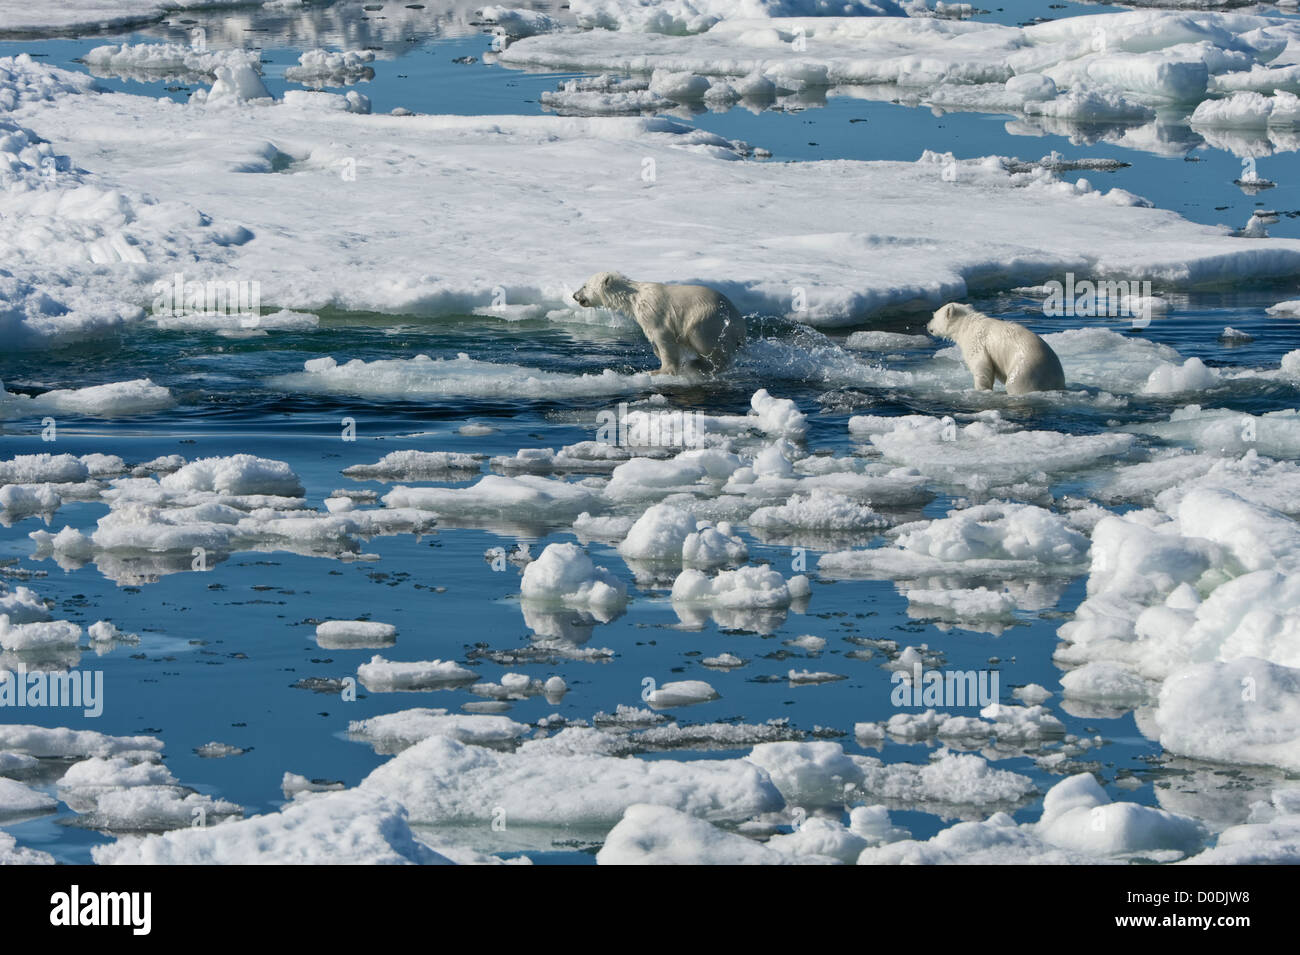 Deux oursons de l'ours polaire (Ursus maritimus) tournant sur la banquise, archipel du Svalbard, mer de Barents, Norvège Banque D'Images